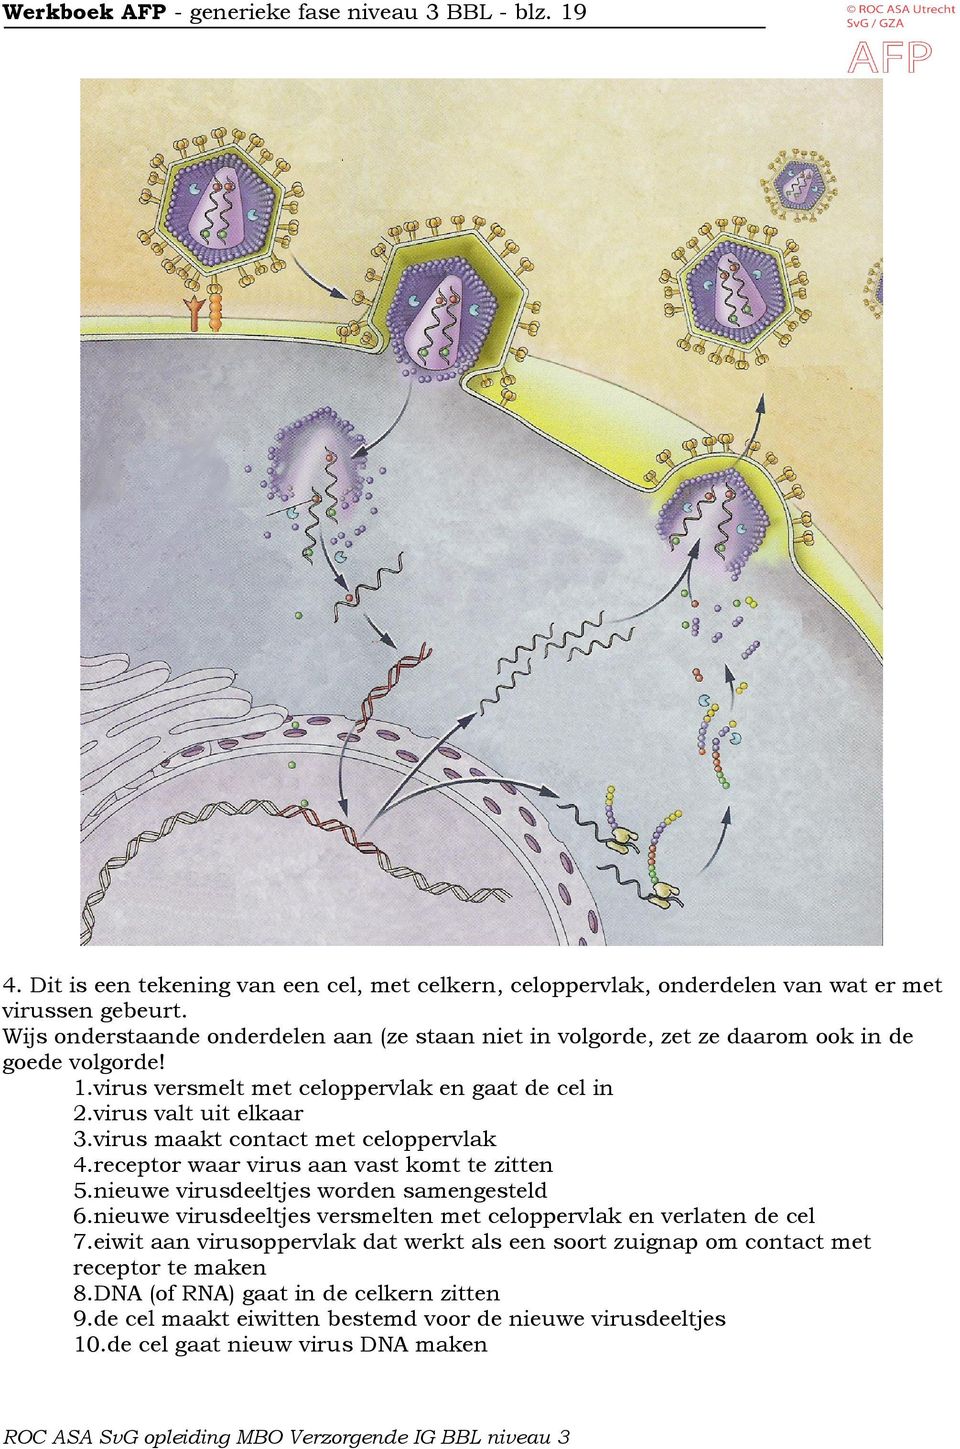 virus maakt contact met celoppervlak 4.receptor waar virus aan vast komt te zitten 5.nieuwe virusdeeltjes worden samengesteld 6.